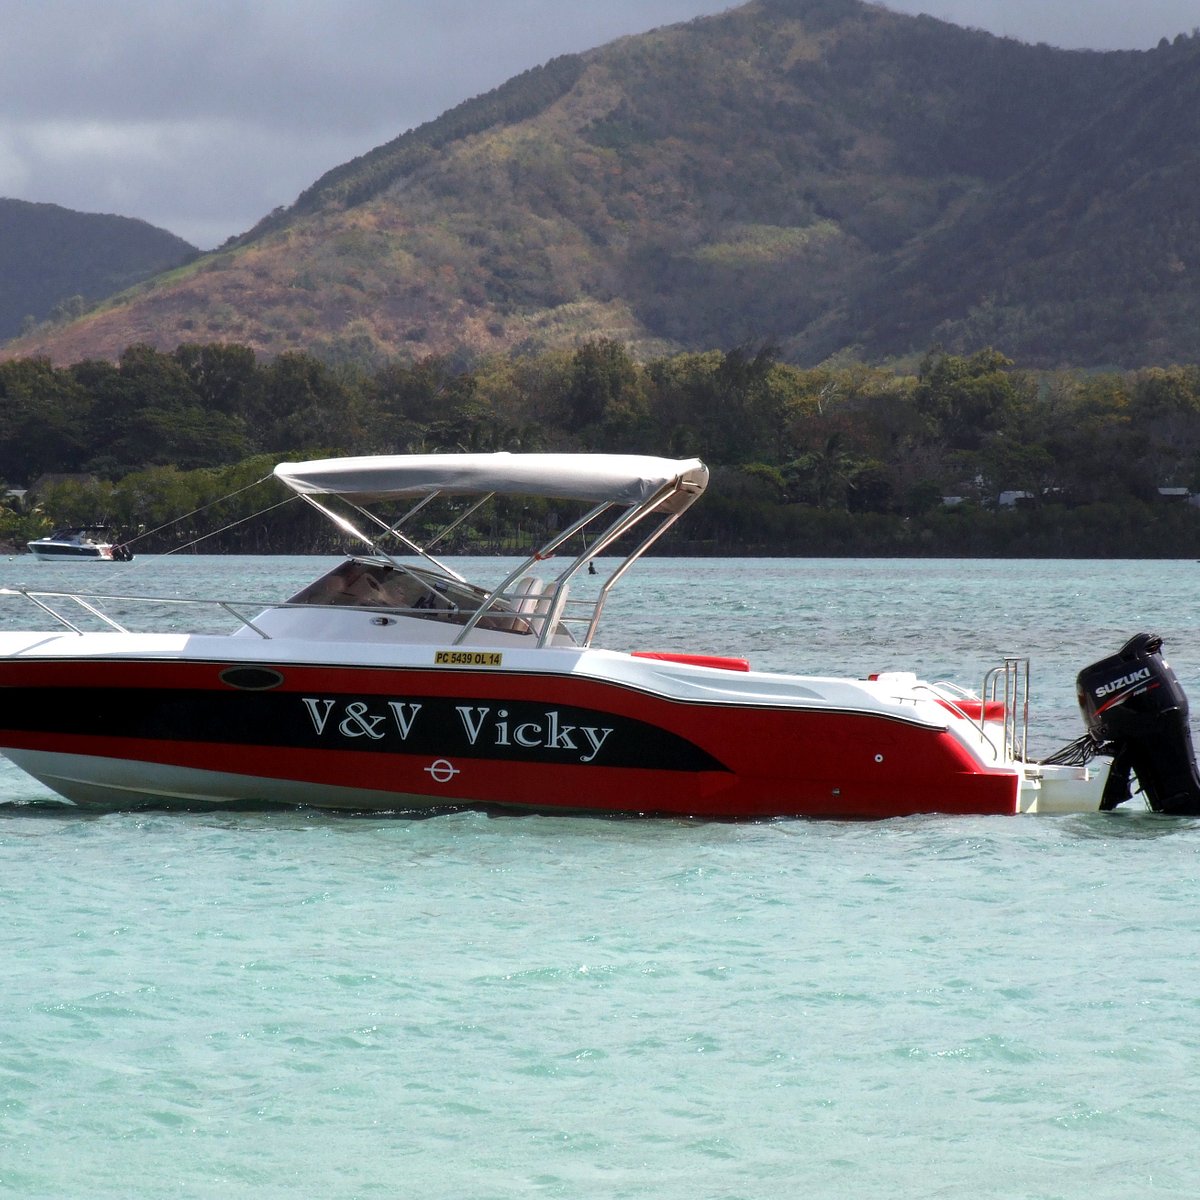 v & v vicky boat tours